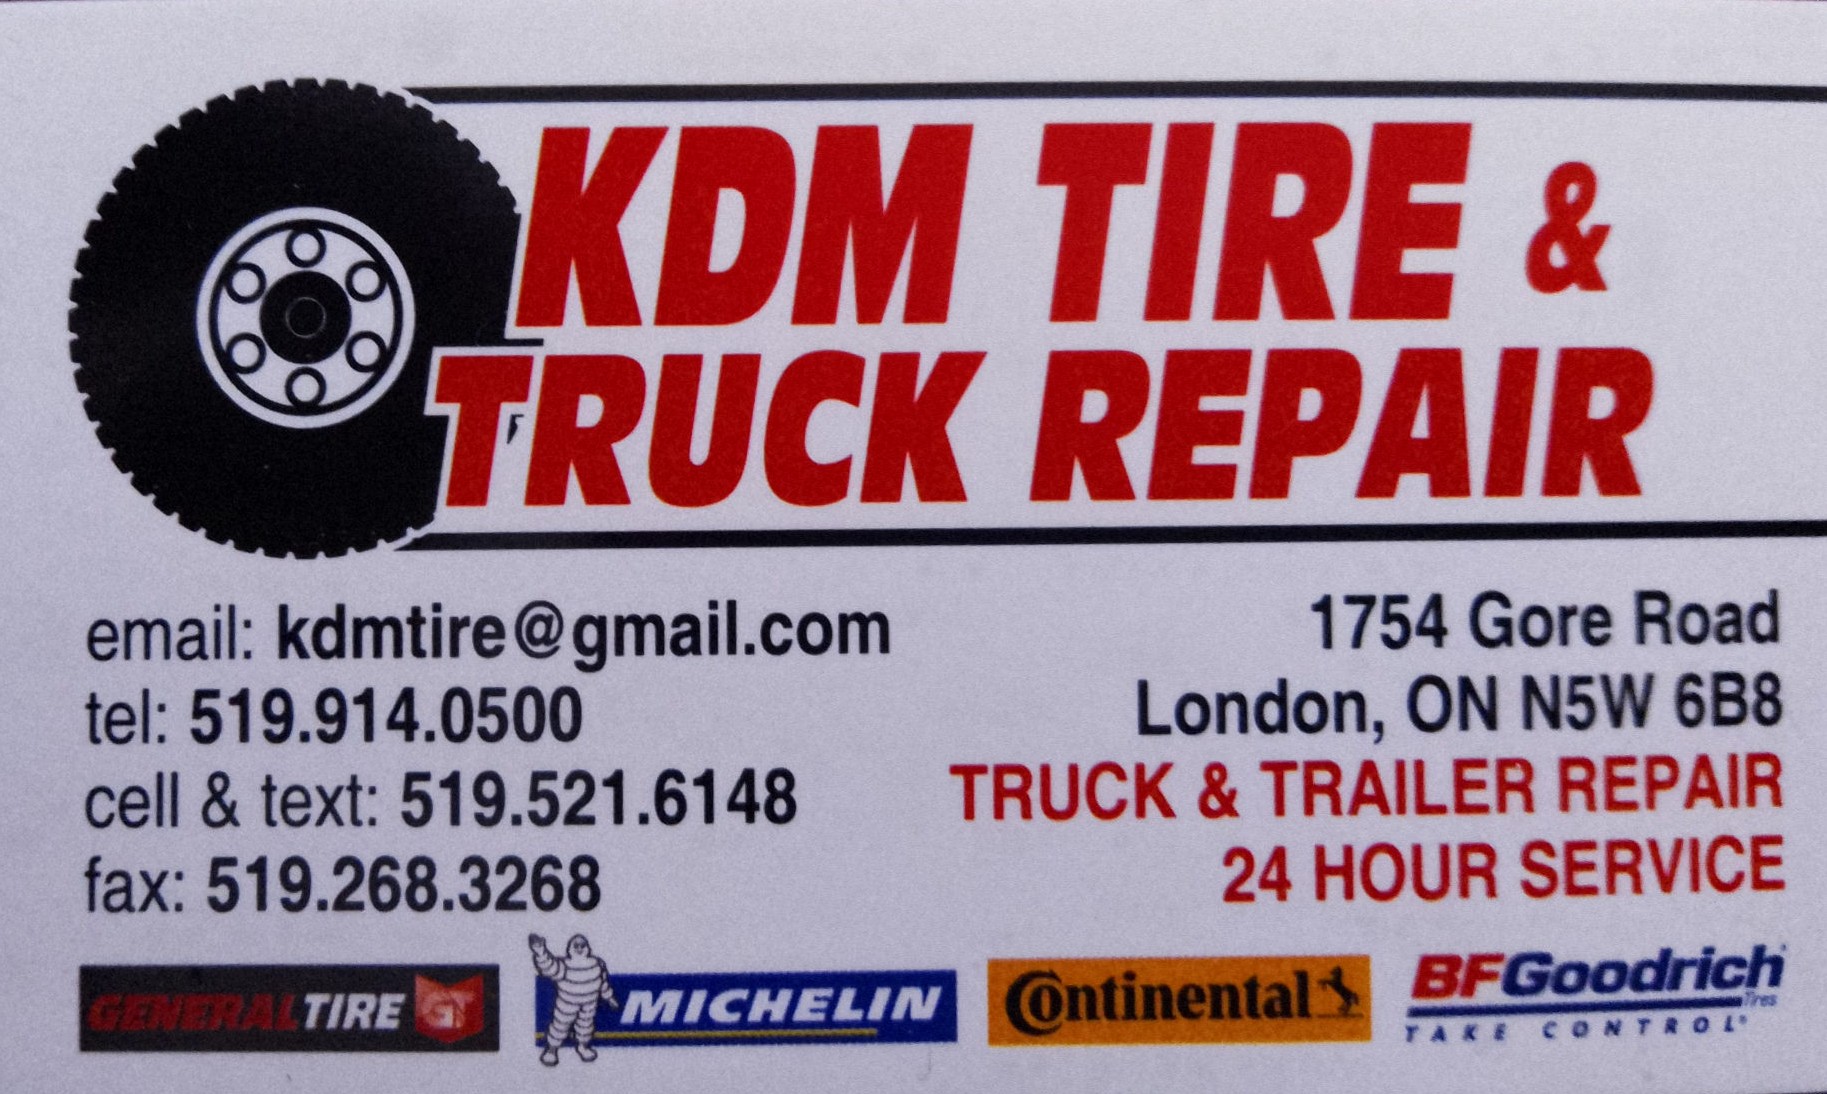 KMD Tire & Truck Repair